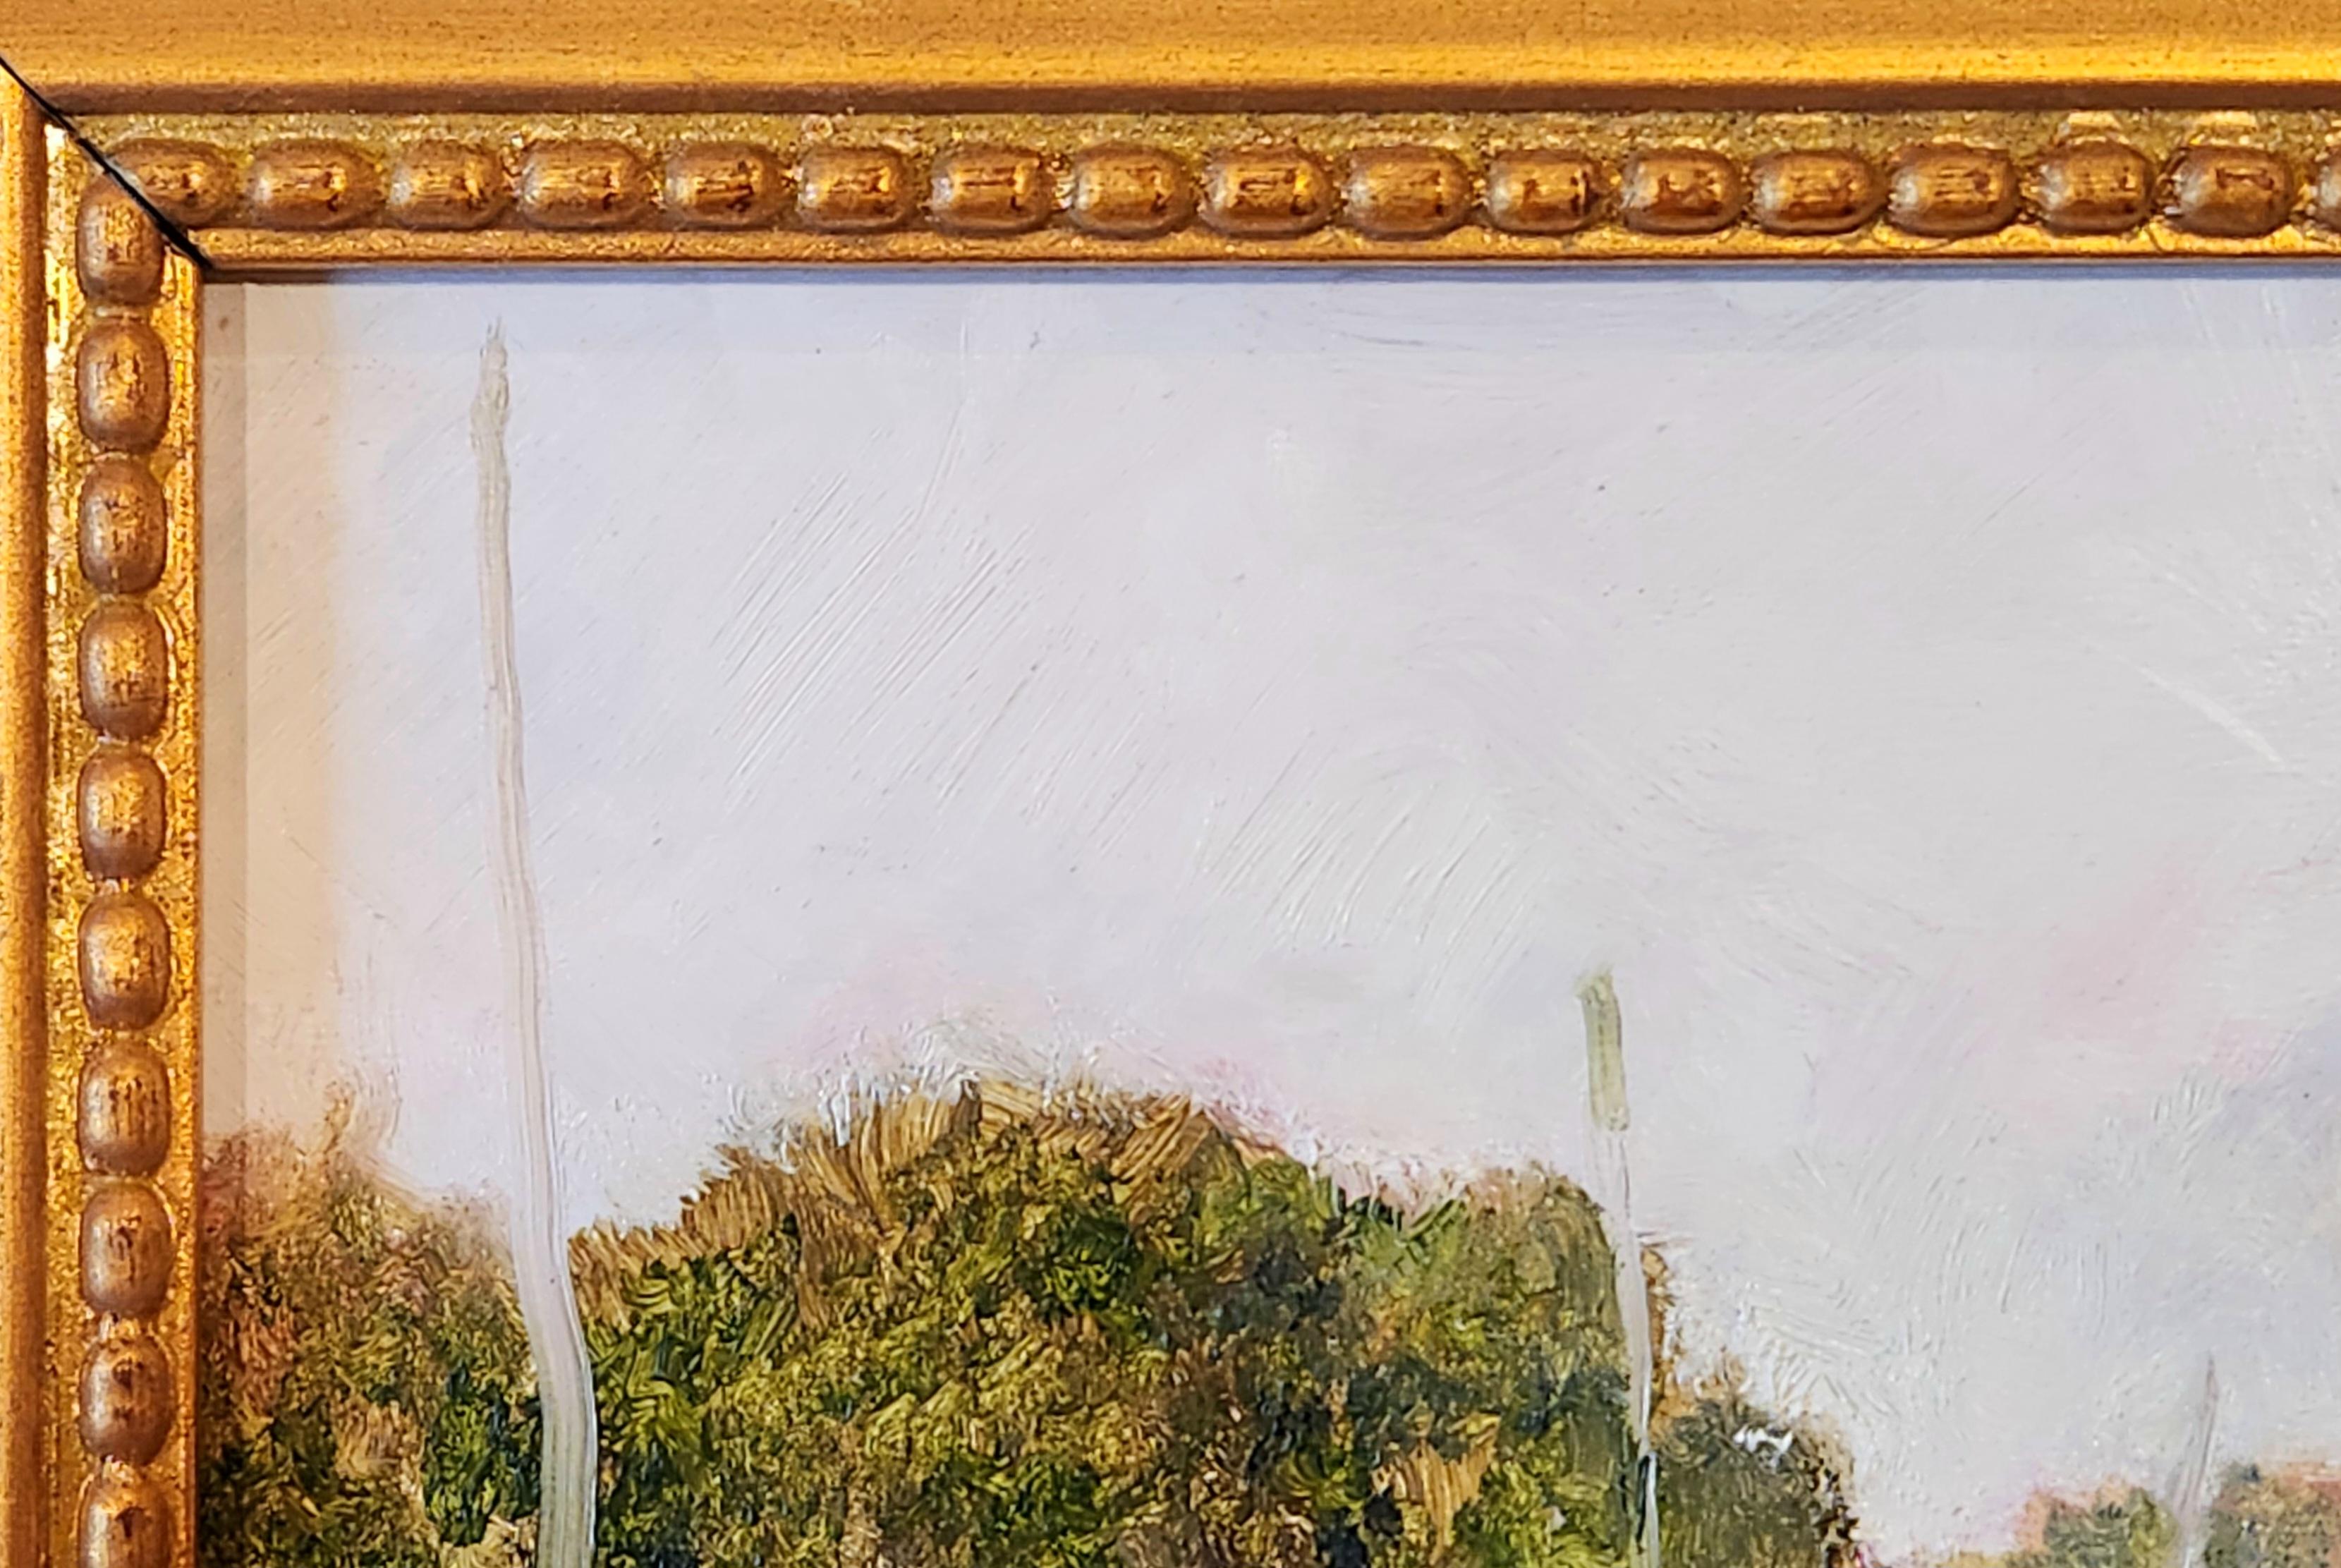 Öl auf Leinwand Gemälde.-- Wapner's Hay Bales – Painting von William Pettit